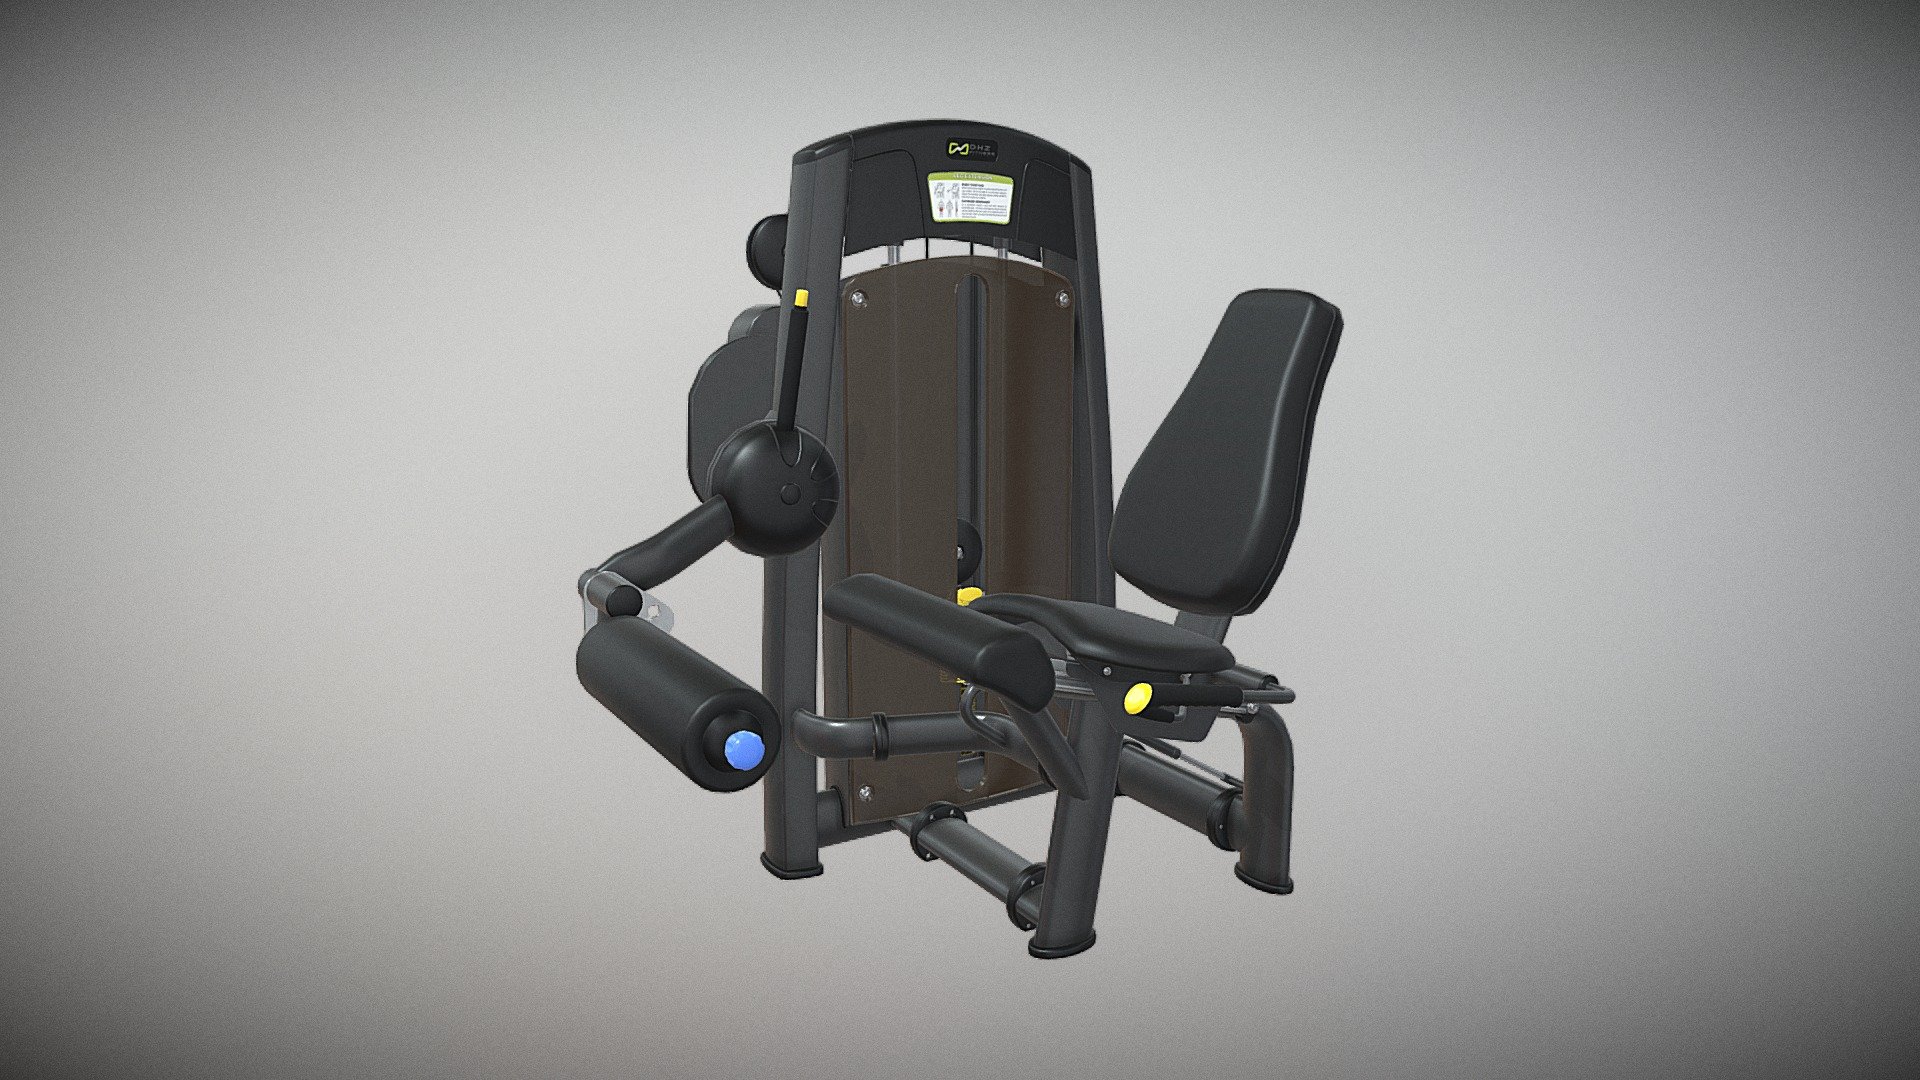 http://dhz-fitness.de/en/allant#A891 - LEG EXTENSION - 3D model by supersport-fitness 3d model